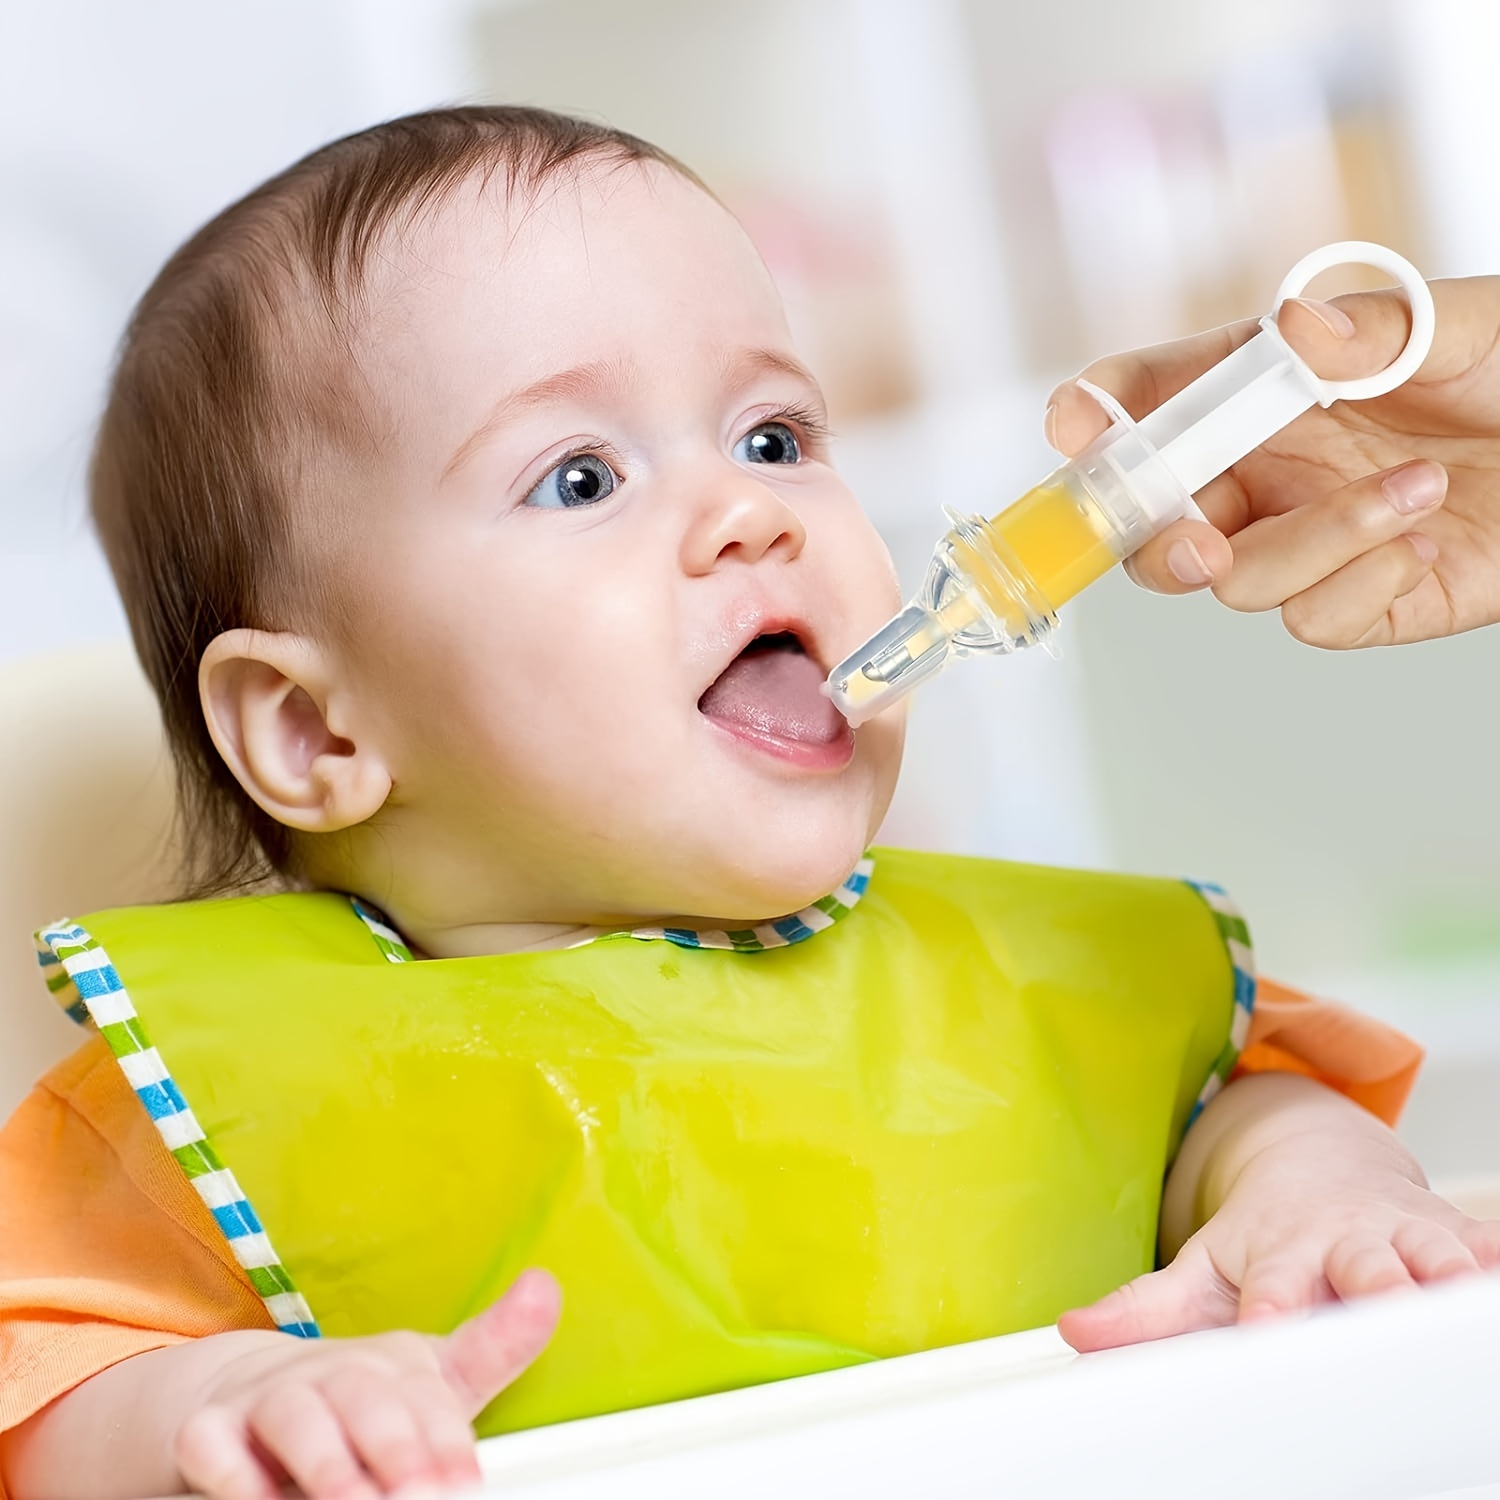 Jeringa lavado nasal bebé 2 PCS, aspirador nasal, pinza de nariz,  nebulizador, sacamocos, jeringuilla reutilizable punta silicona limpieza  mocos, suero fisiológico, irrigador para recién nacidos